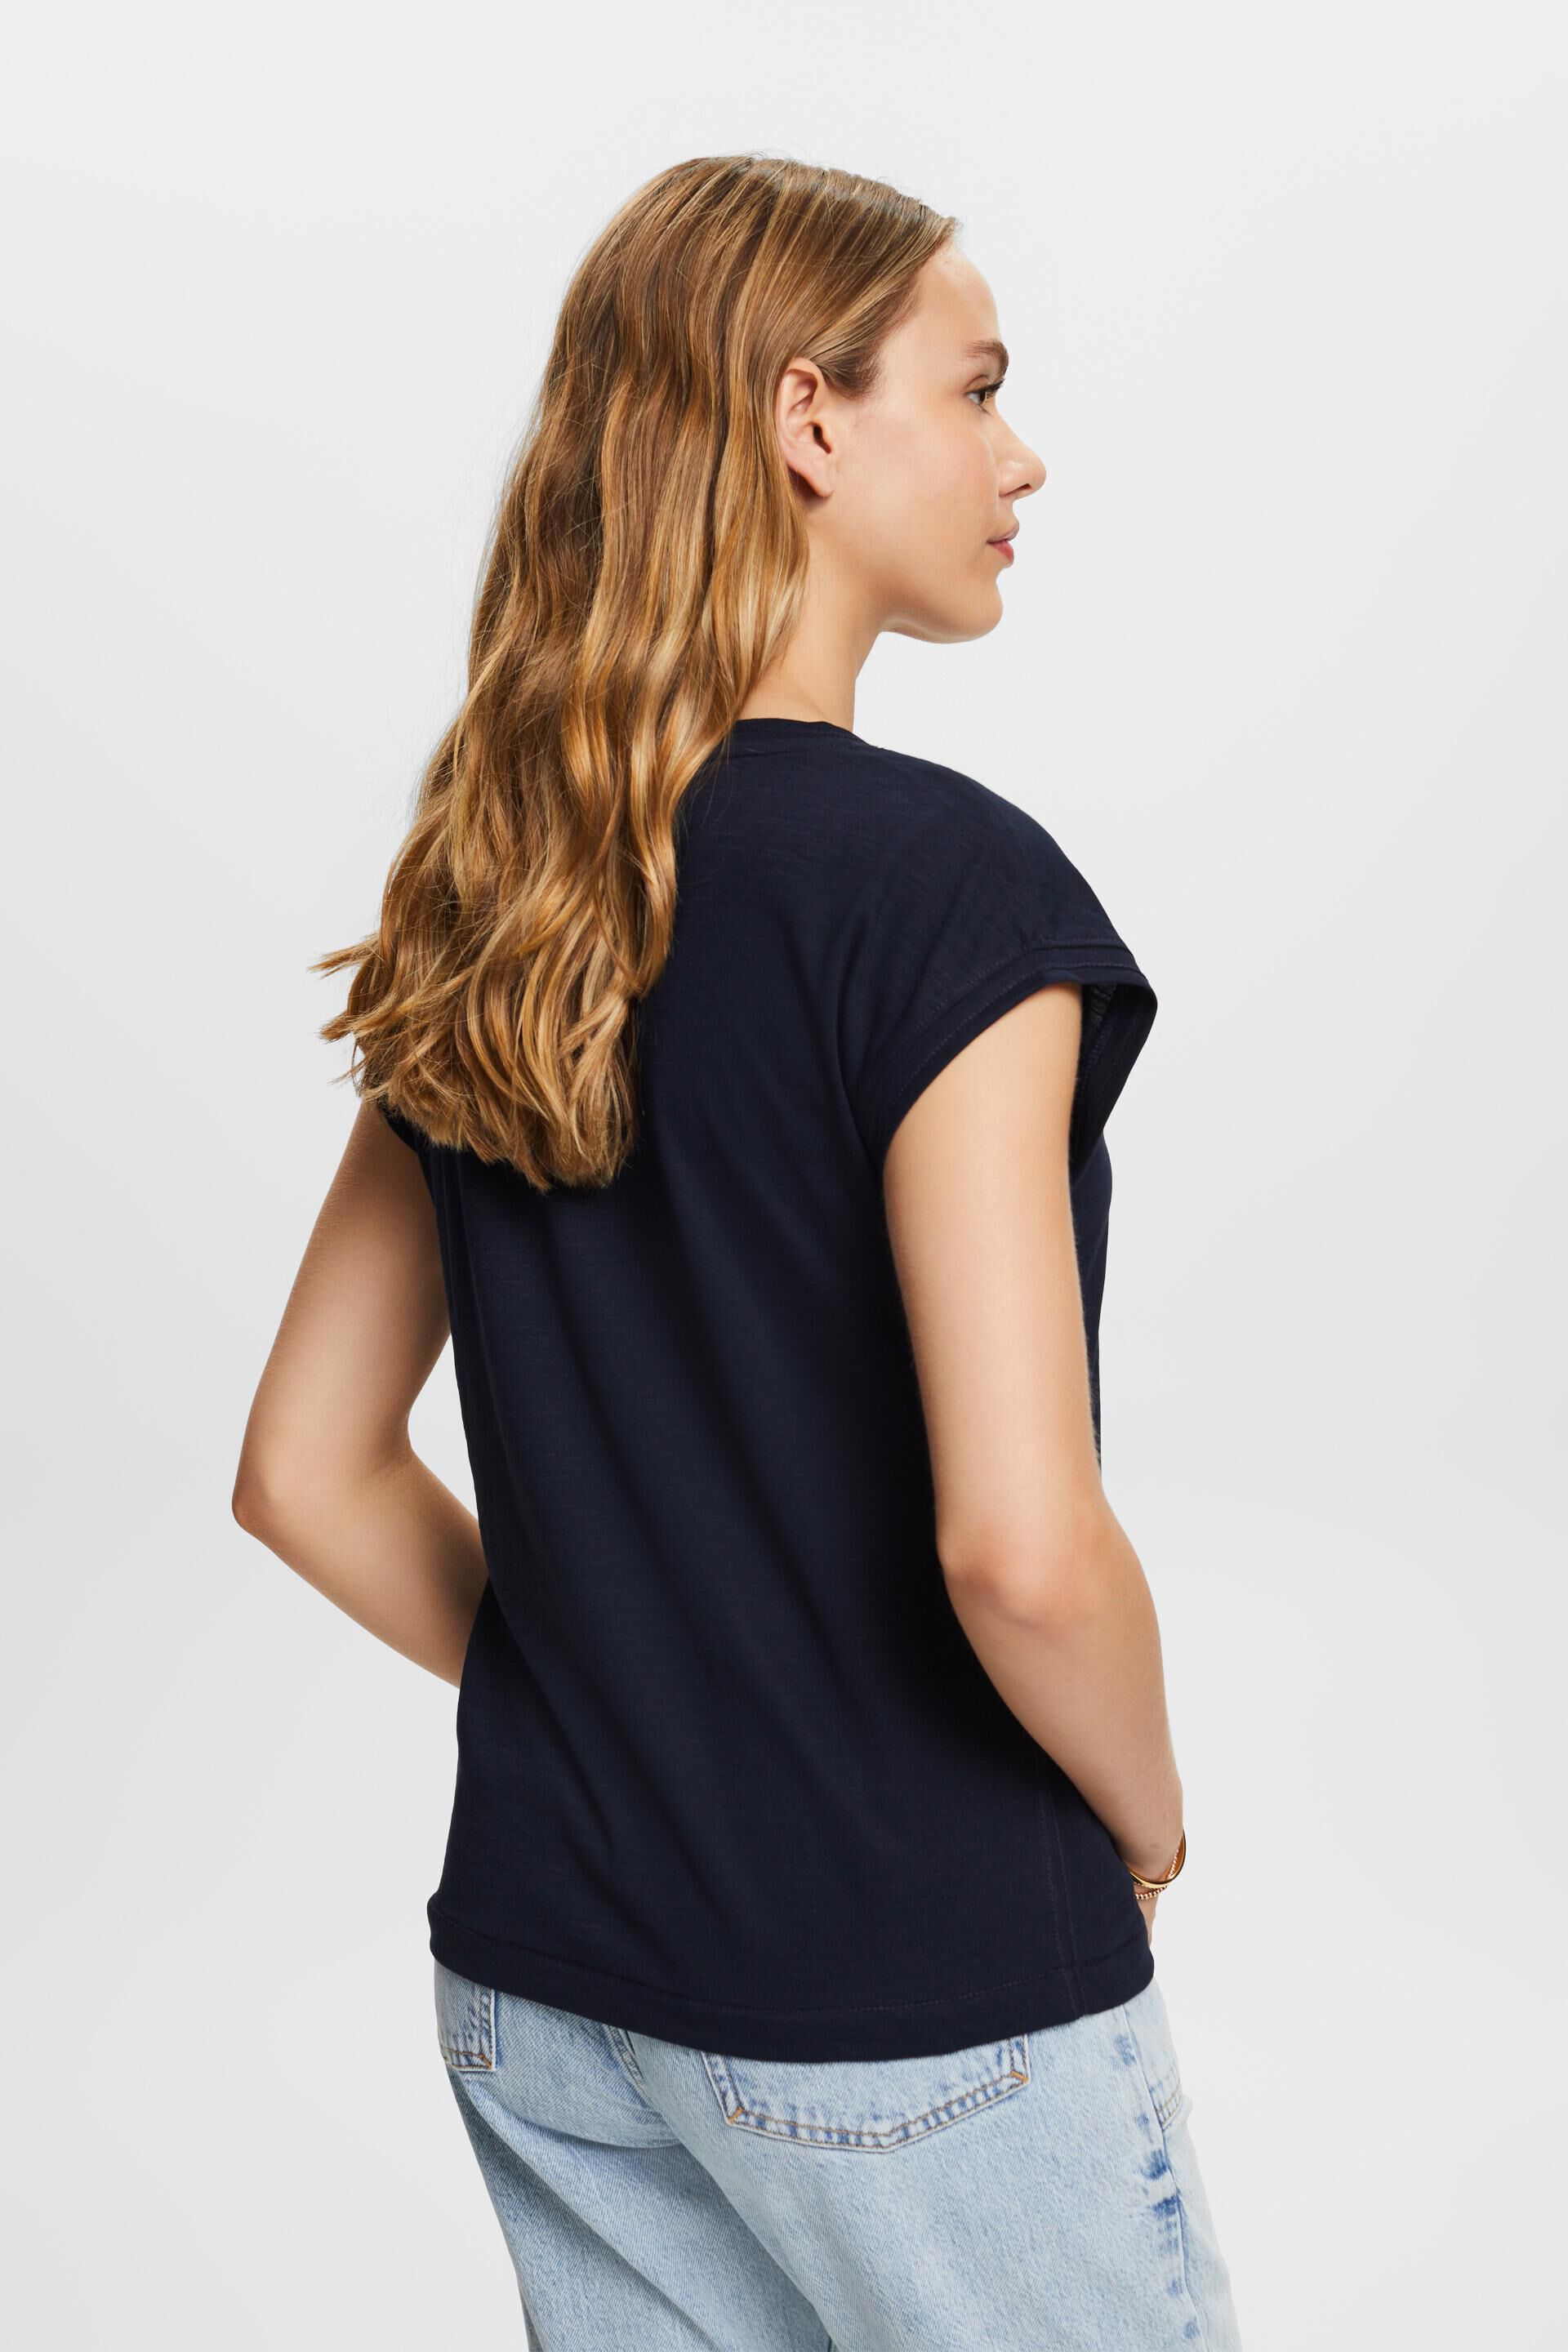 Esprit Baumwolle Aufdruck, mit % 100 T-Shirt